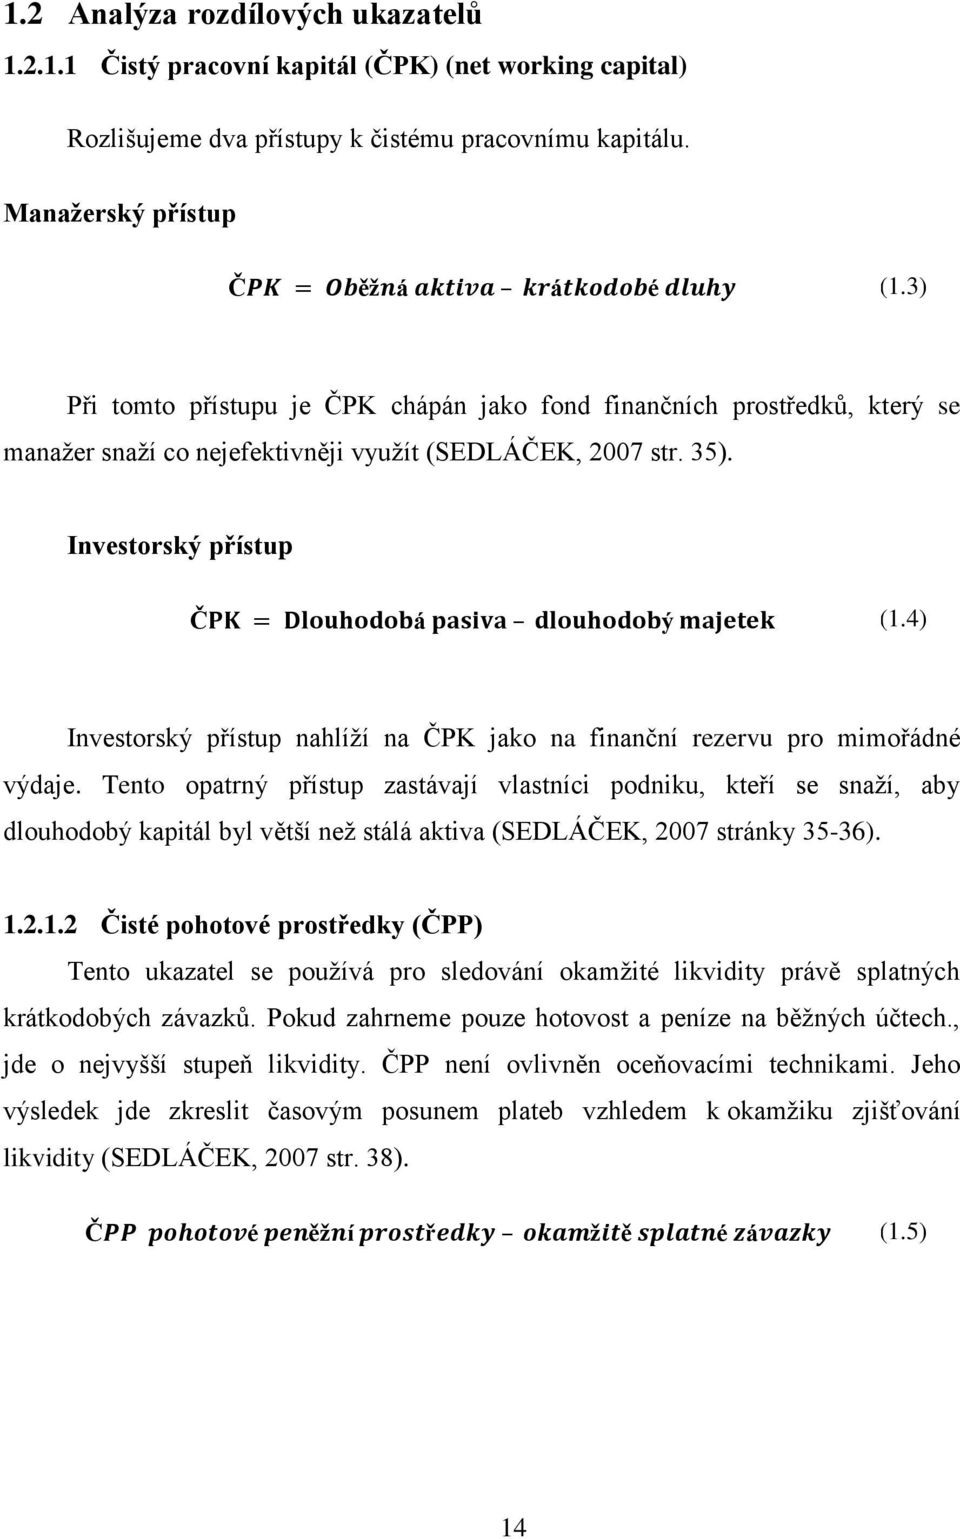 4) Investorský přístup nahlíží na ČPK jako na finanční rezervu pro mimořádné výdaje.